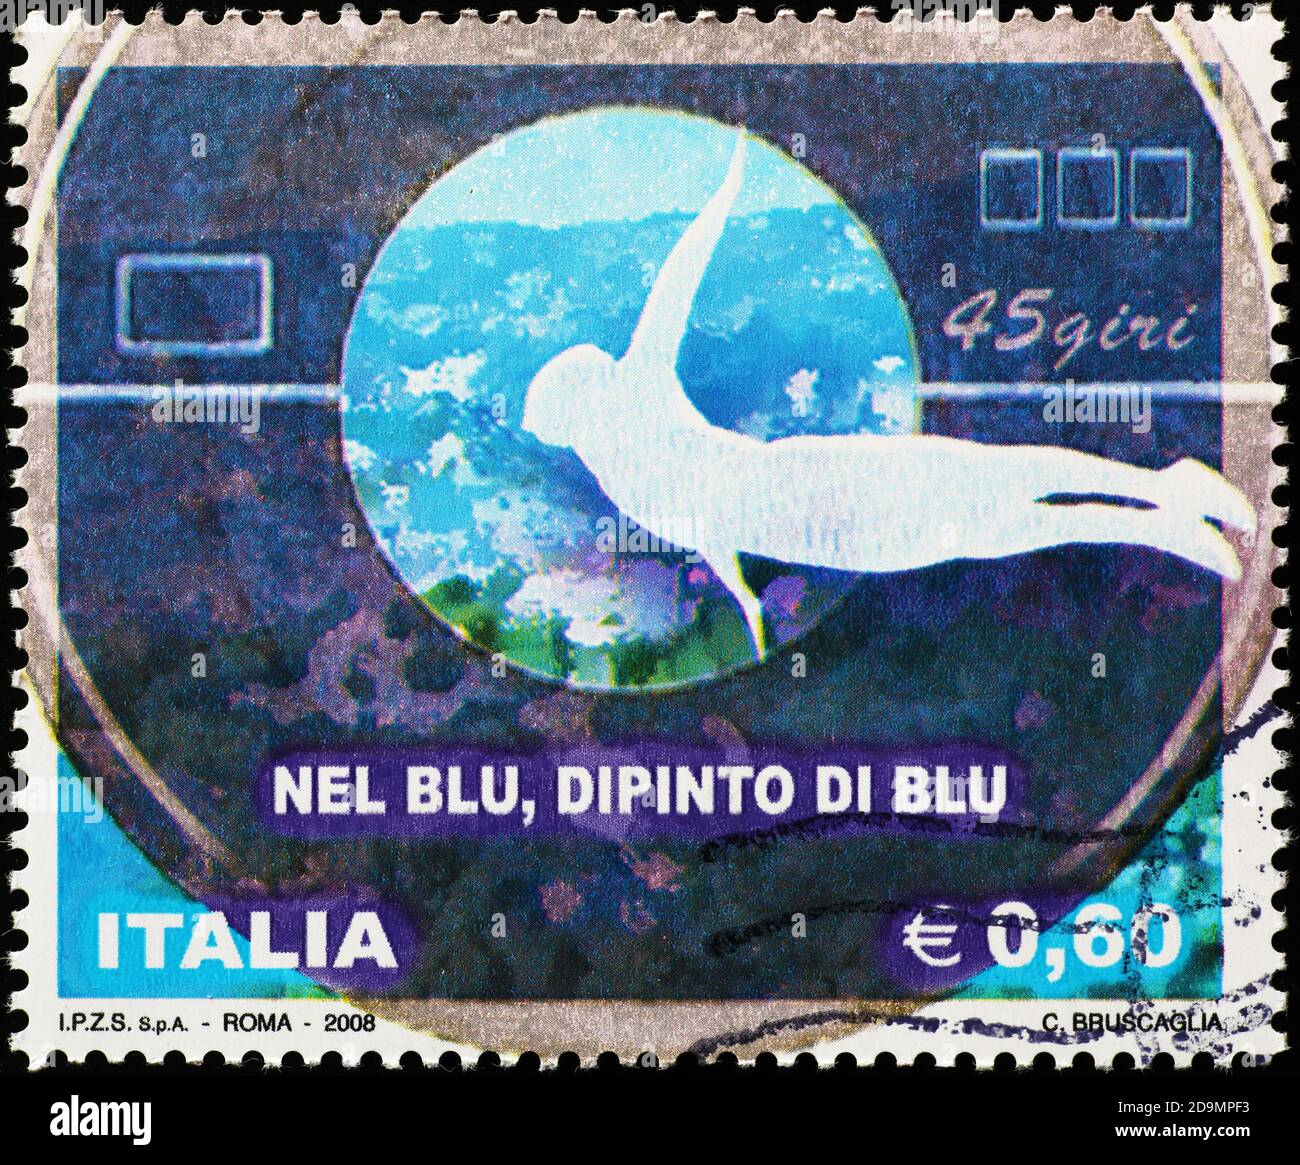 Célébration de la chanson italienne Nel blu dipinto di blu on tampon Banque D'Images